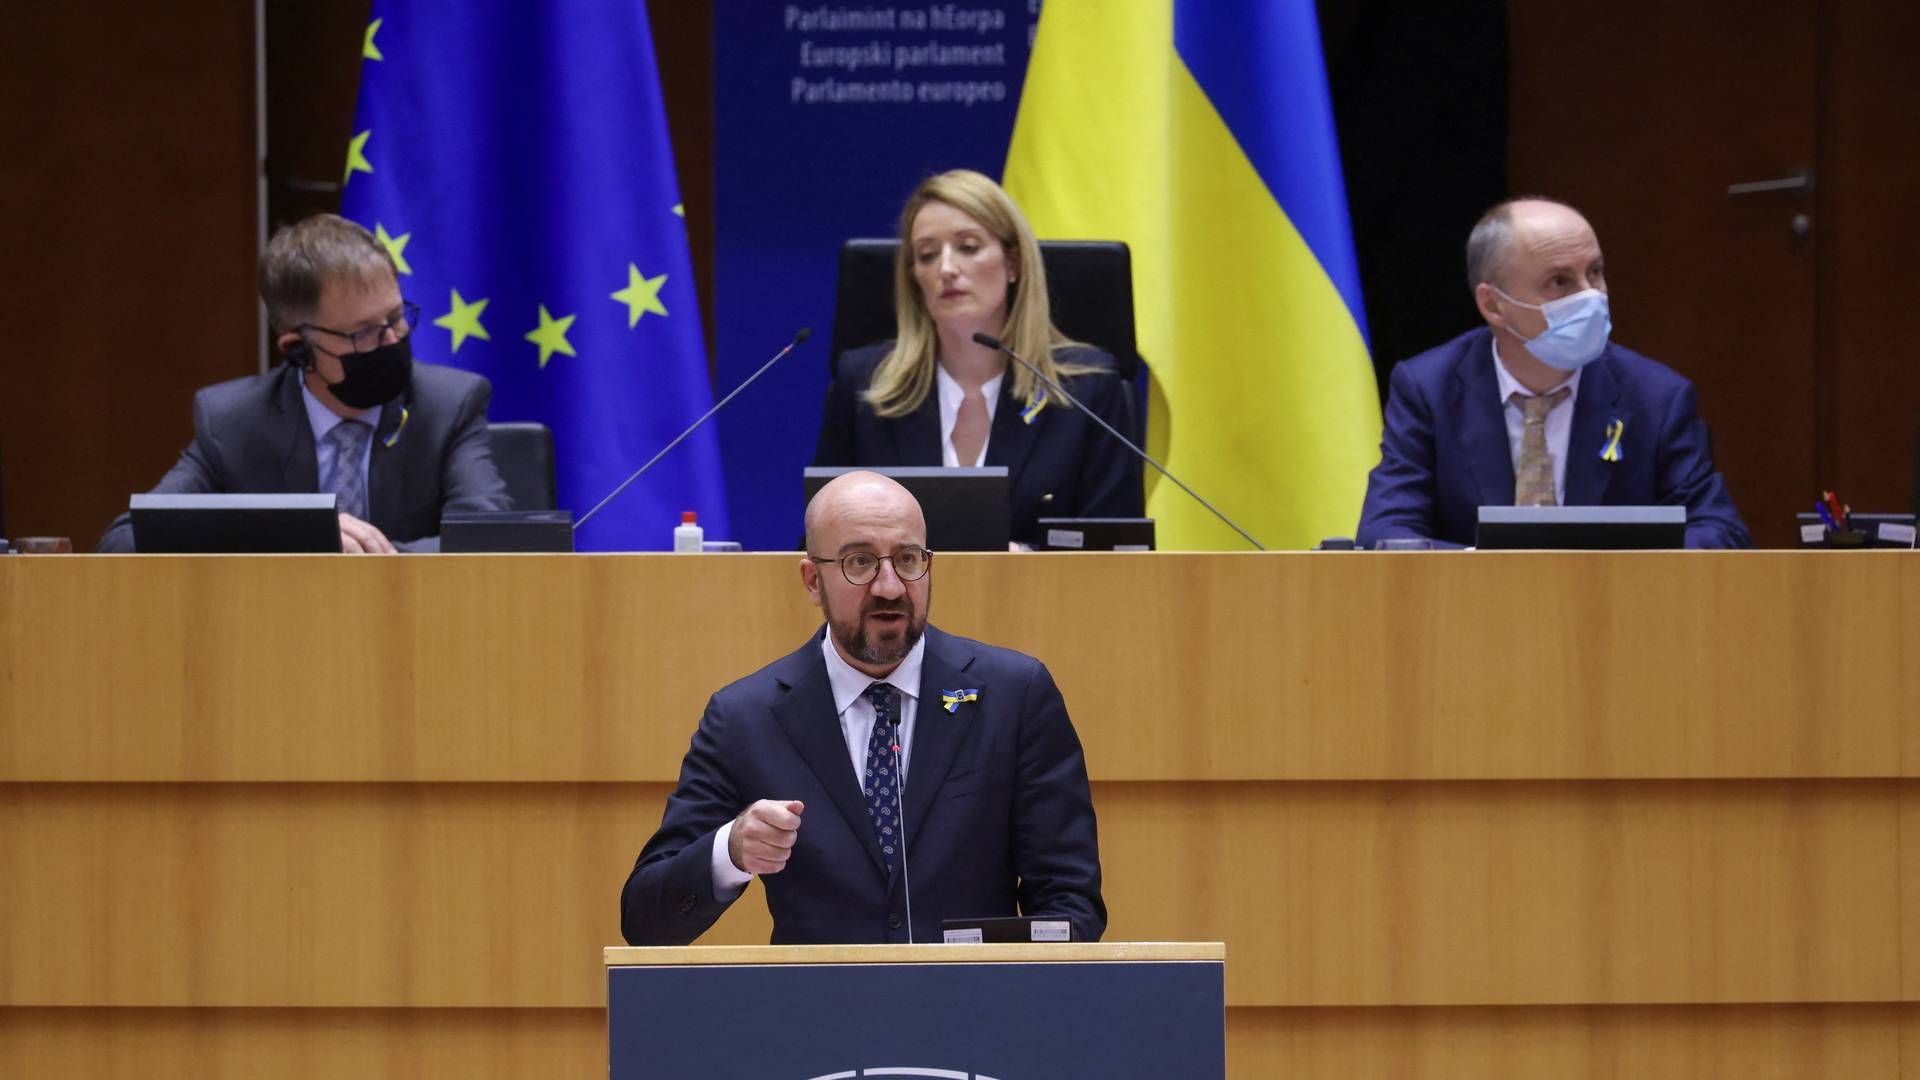 "Det bliver svært. Vi ved, at der er mange forskellige synspunkter i Europa," siger EU-præsident Charles Michel om Ukraines ansøgning om medlemskab. | Foto: Yves Herman/REUTERS / X00380